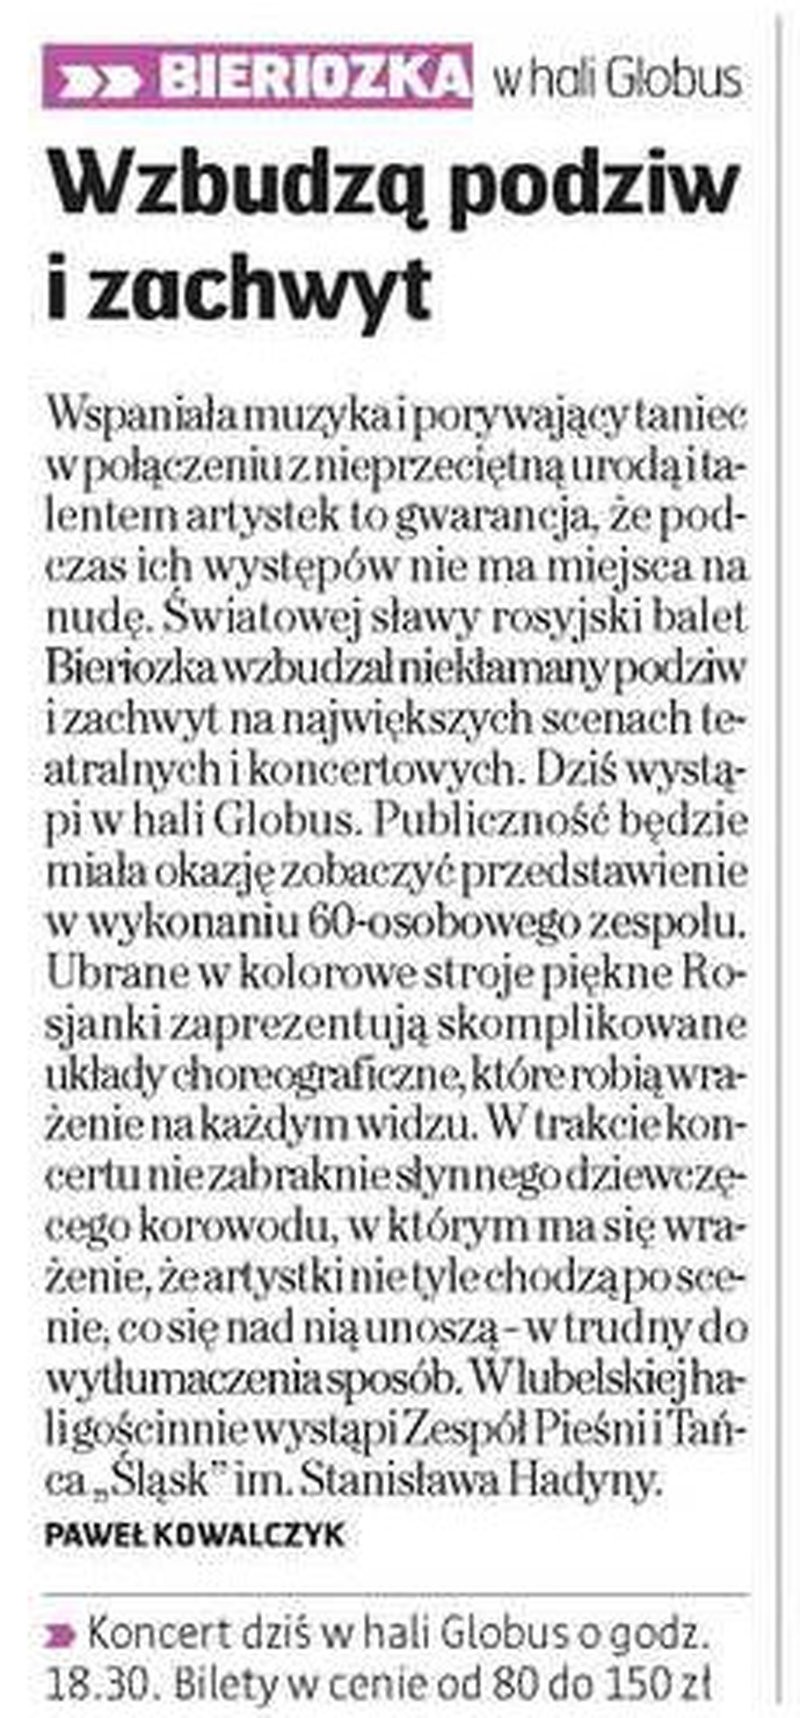 Wzbudza podziw i zachwyt - Gazeta Wyborcza